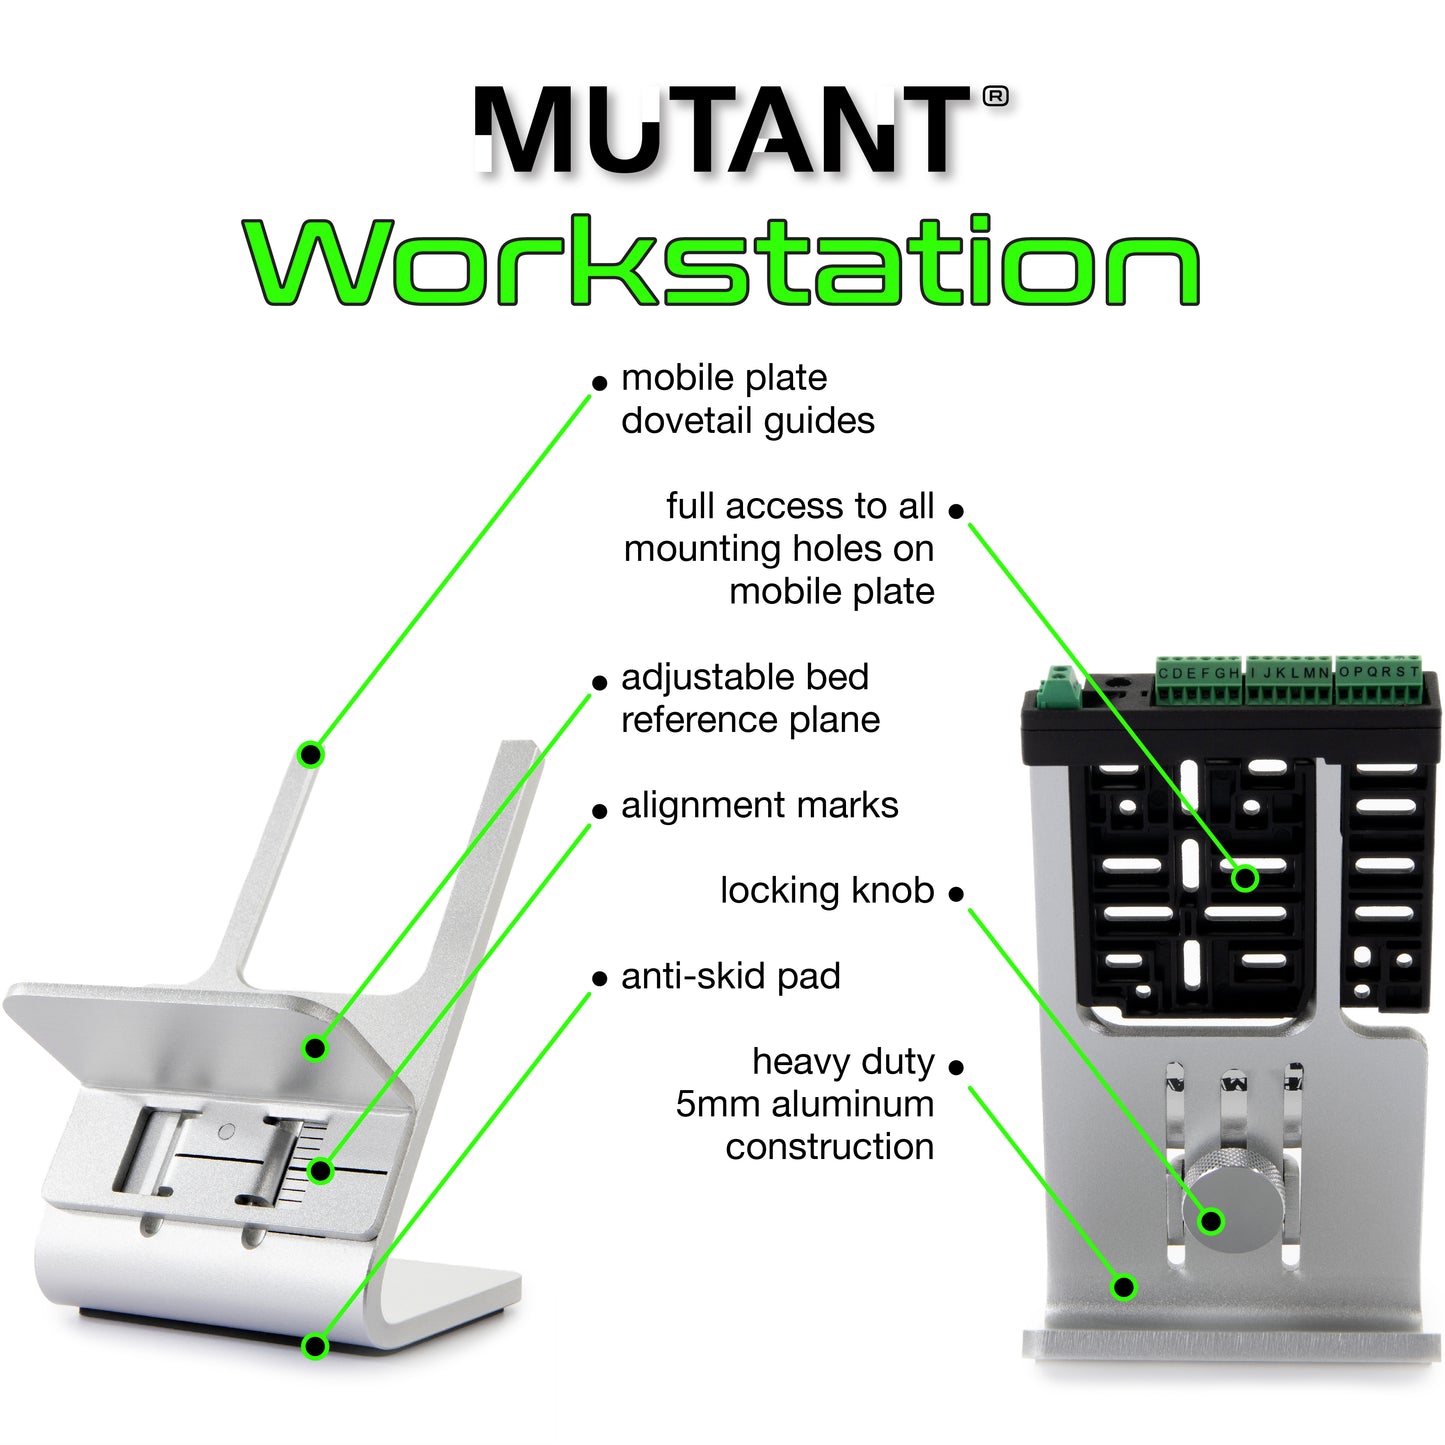 MUTANT Workstation